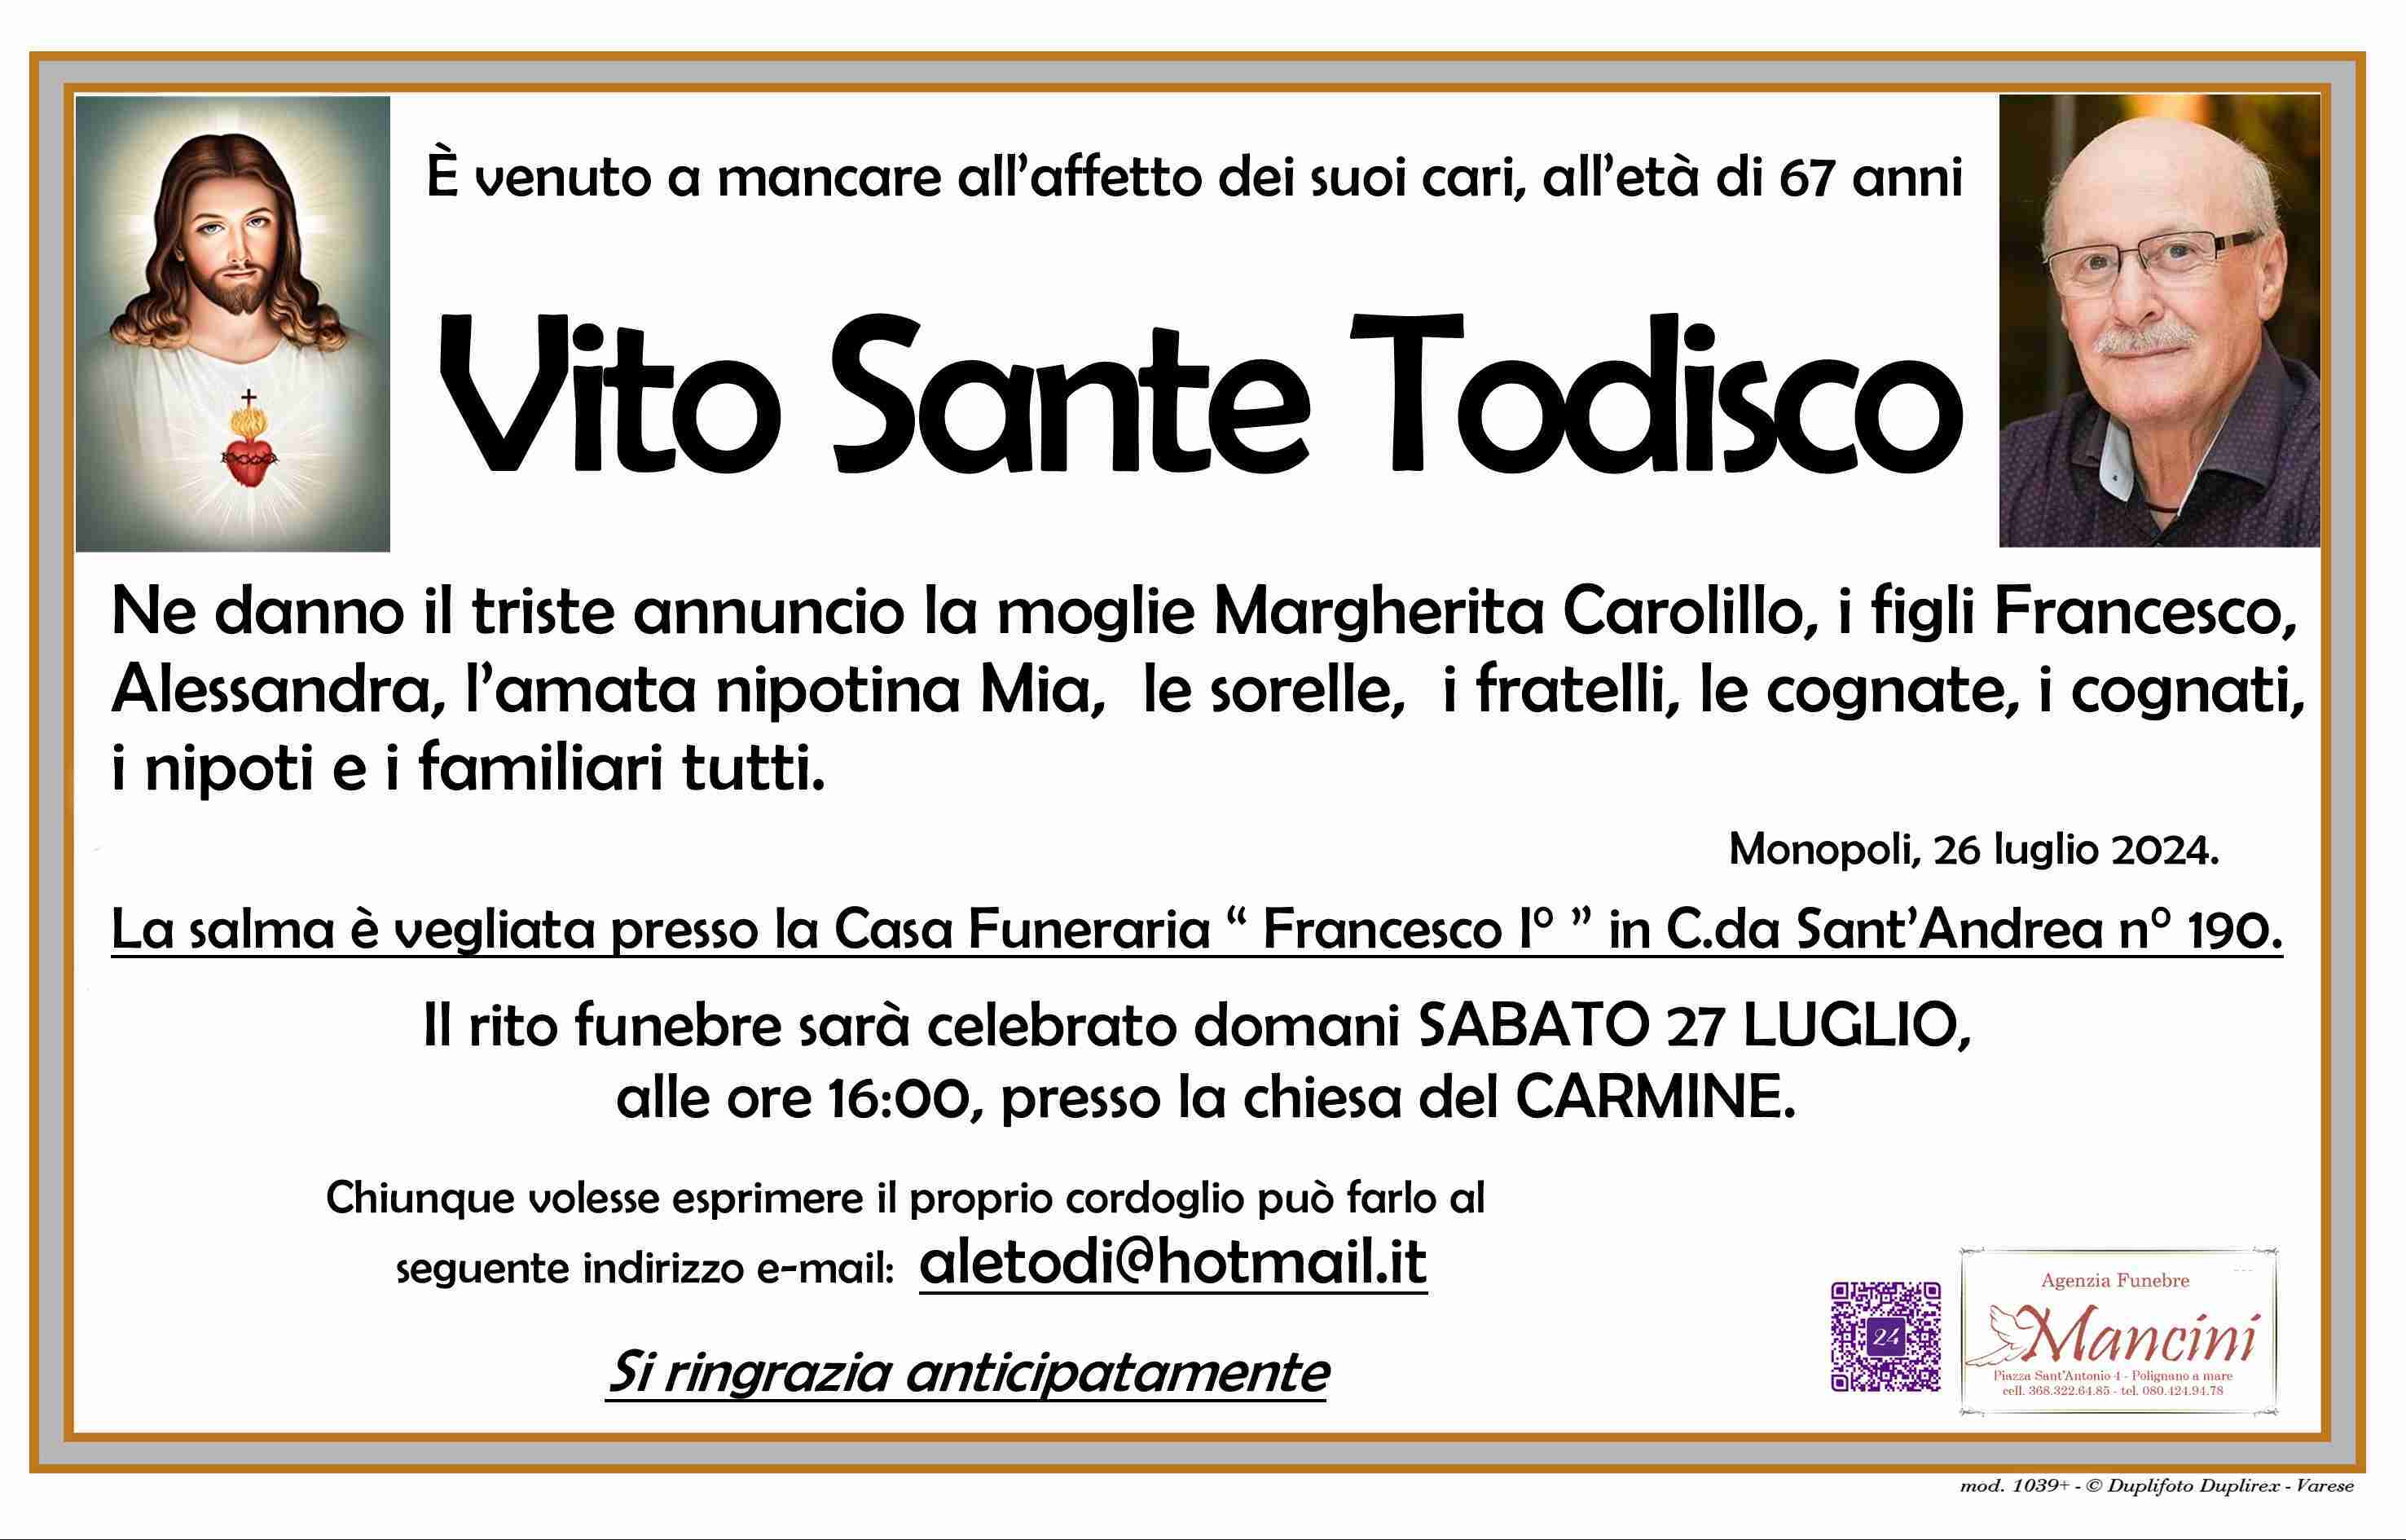 Vito Sante Todisco